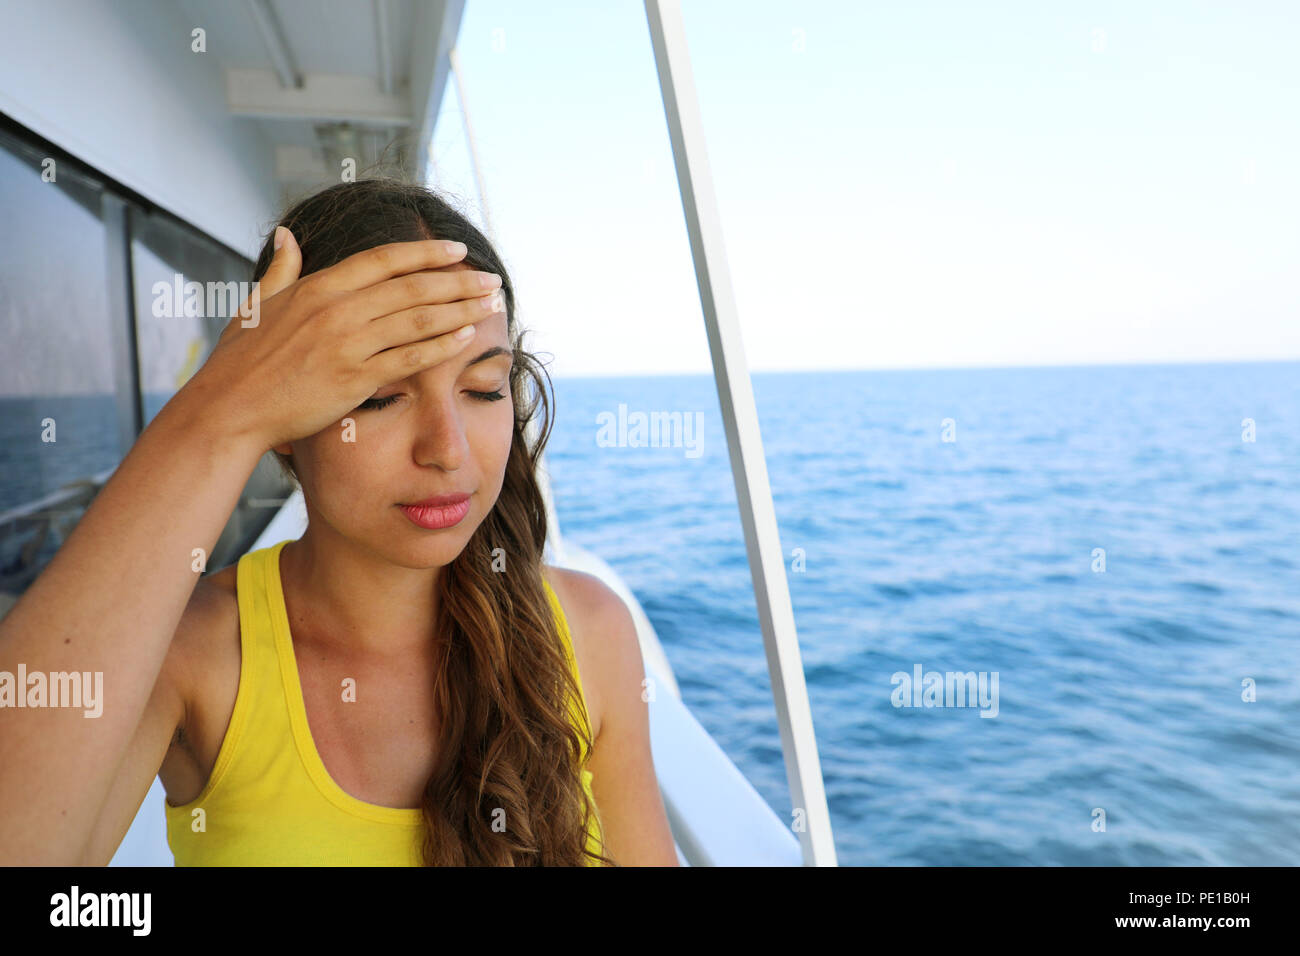 Junge Frau leiden unter Seekrankheit während der Ferien auf dem Boot. Kreuzfahrt meer Reisekrankheit touristische Frau auf Boot Urlaub mit Kopfschmerzen oder Übelkeit. Stockfoto